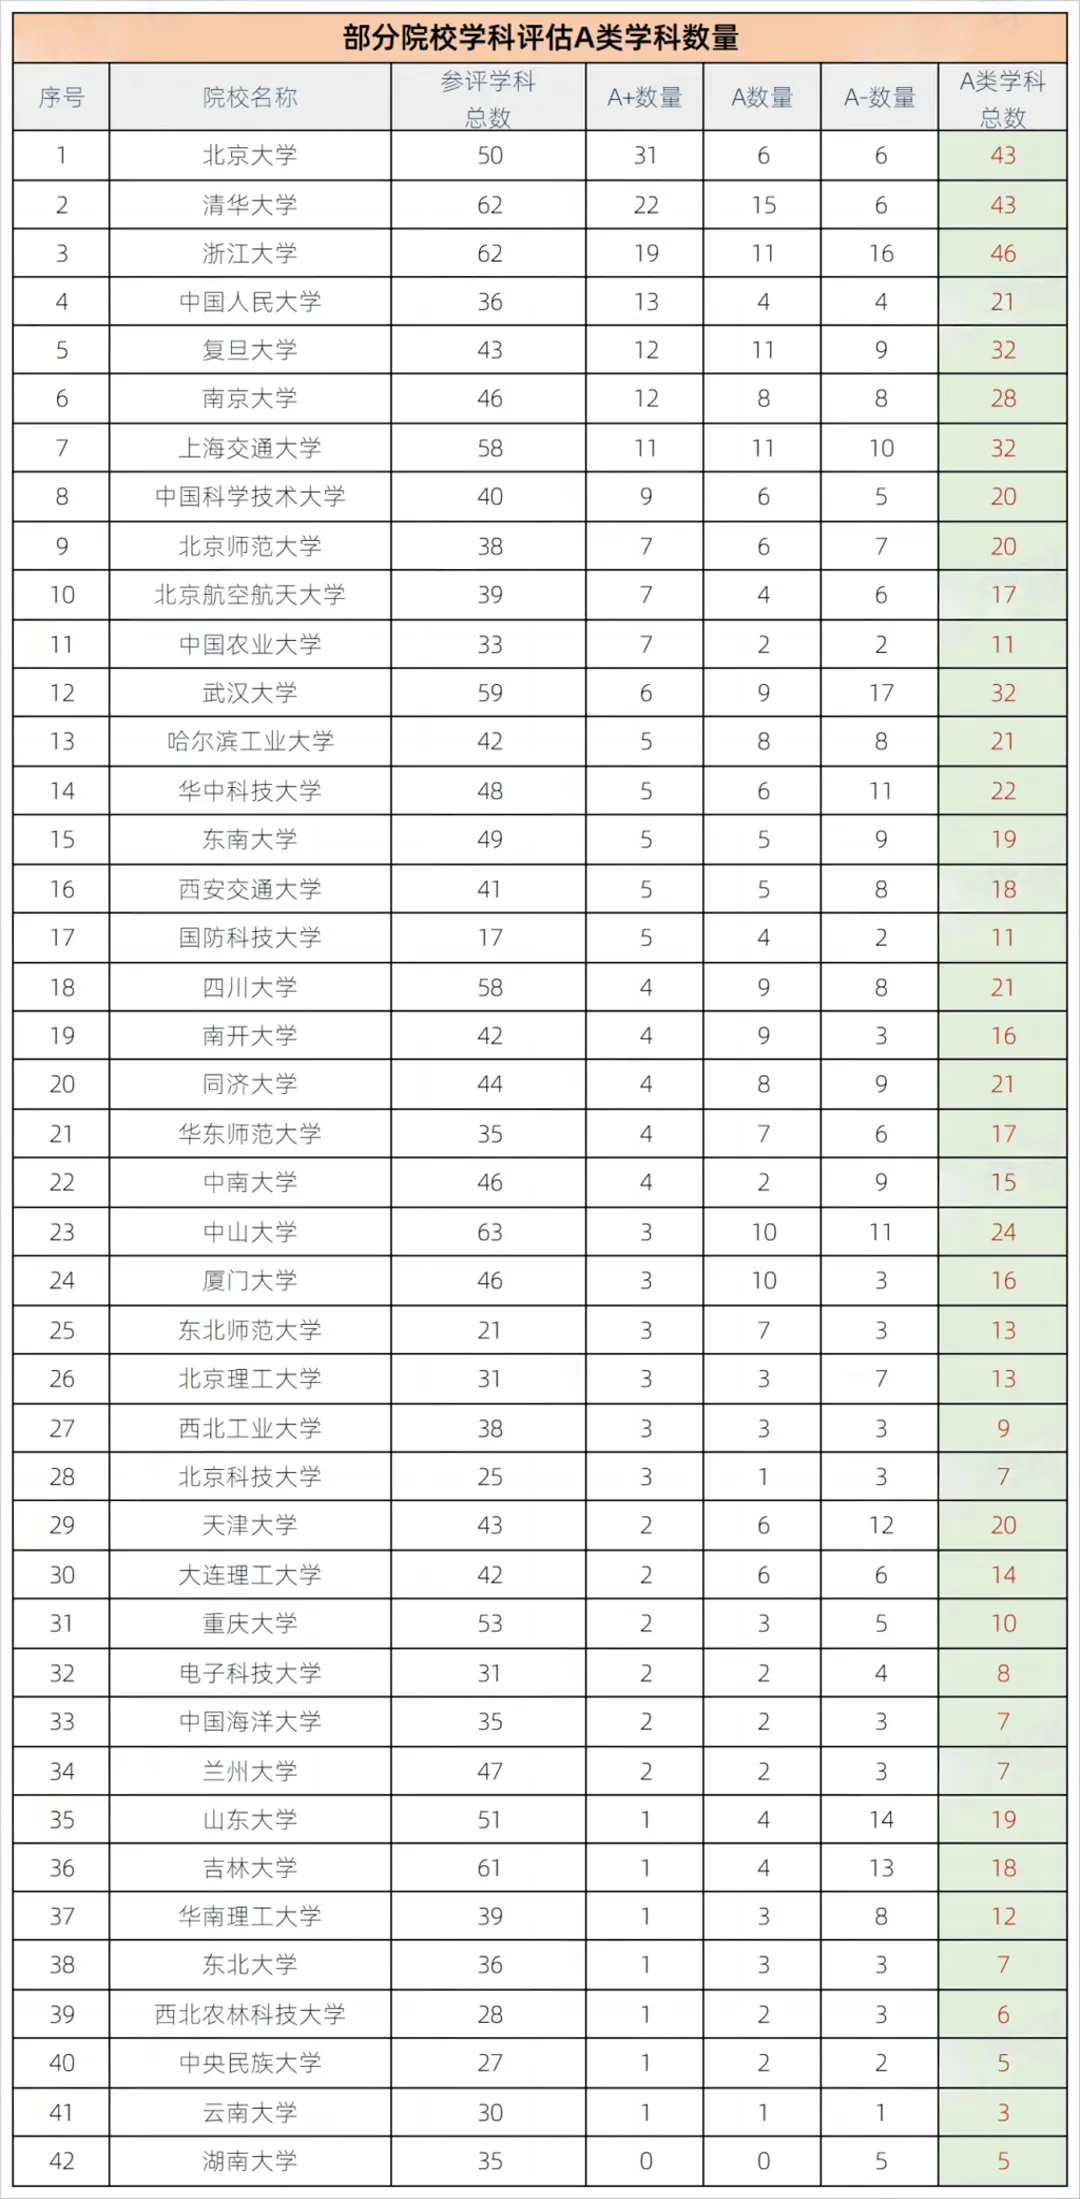 上海理工大学第五轮学科评估排名结果